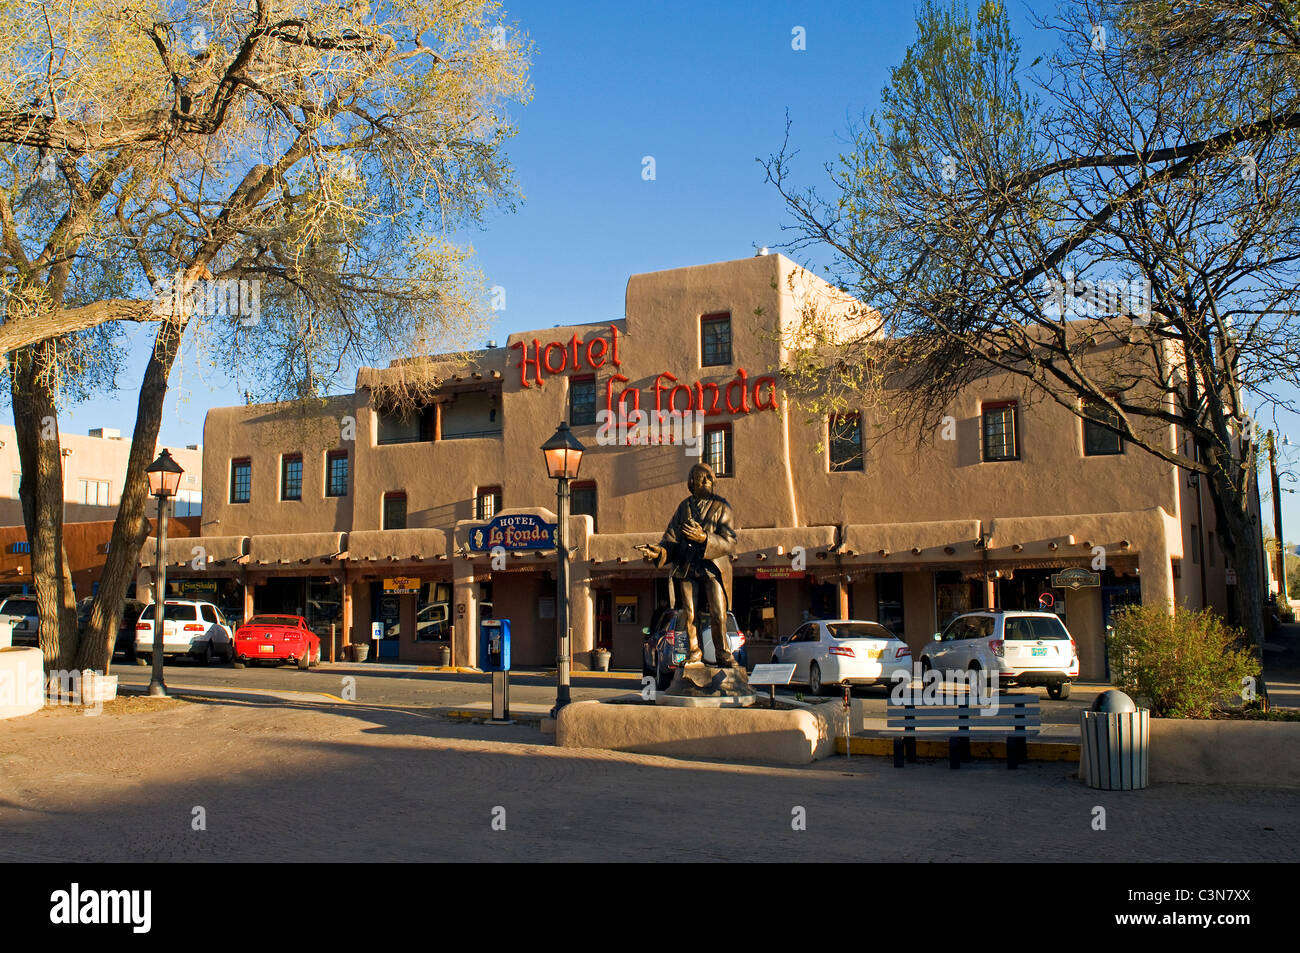 Vue extérieure de l'hôtel La Fonda de Taos au Nouveau-Mexique Banque D'Images